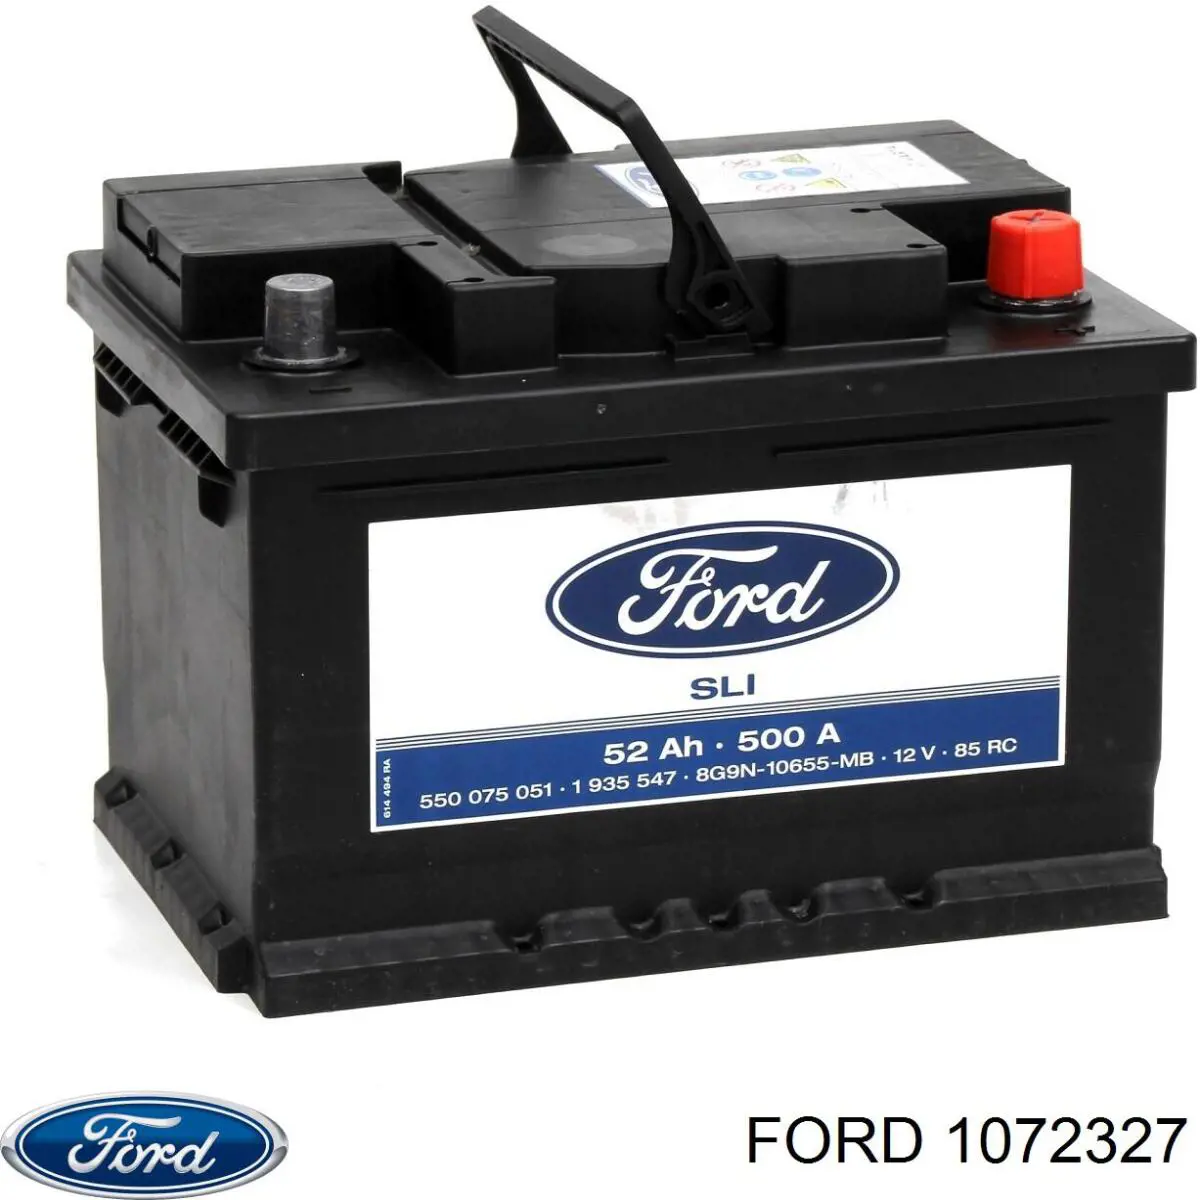 1053140 Ford bateria recarregável (pilha)